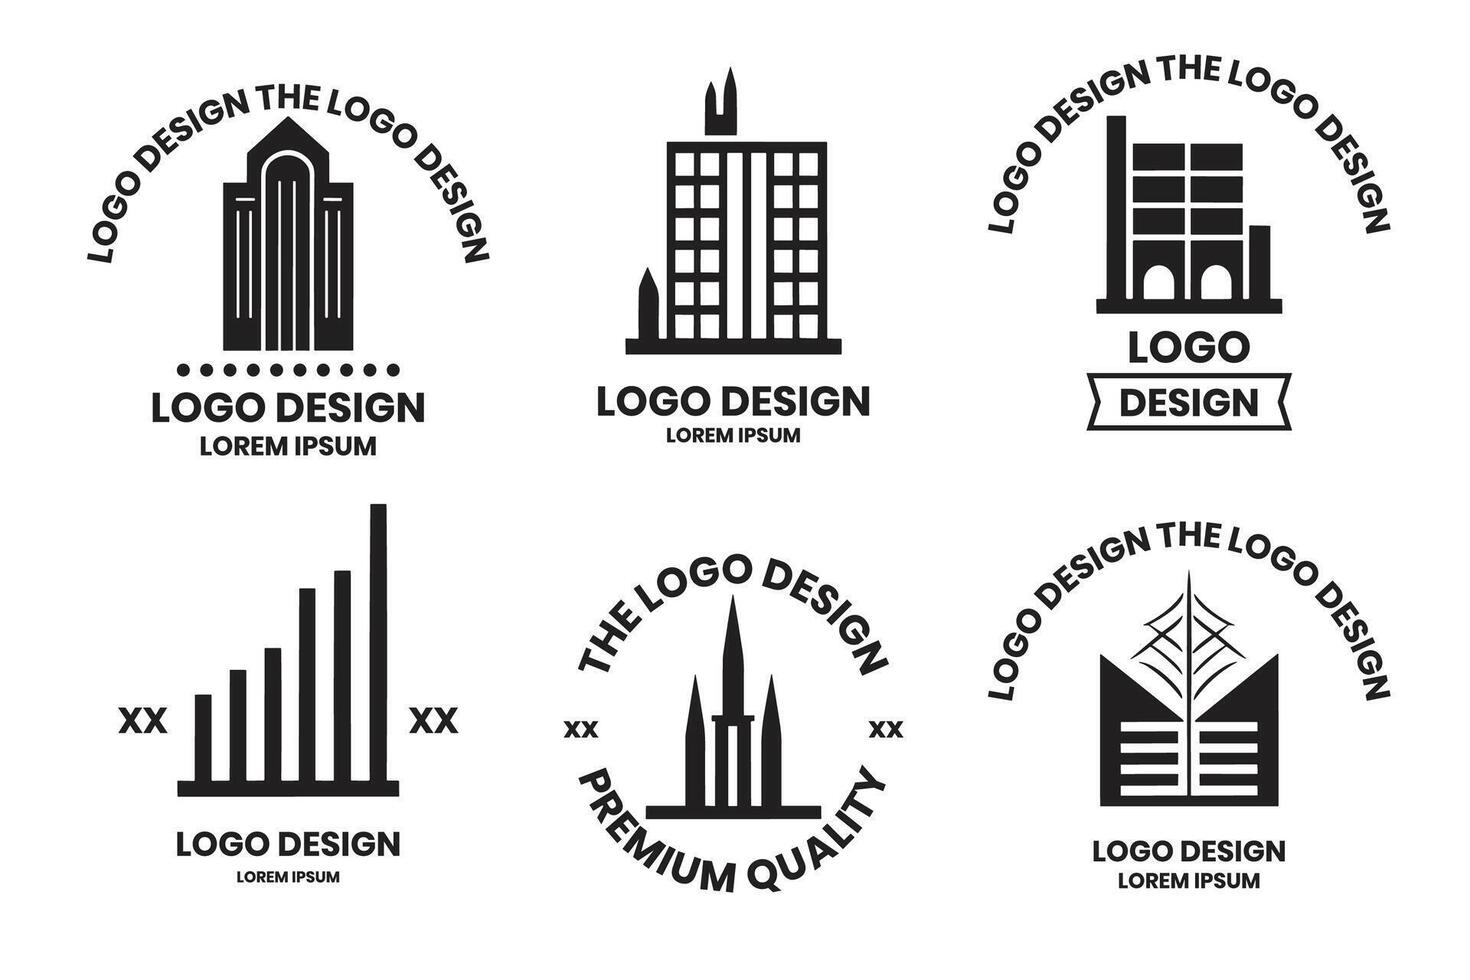 Häuser und Wolkenkratzer Logo oder Abzeichen im Jahrgang Stil vektor